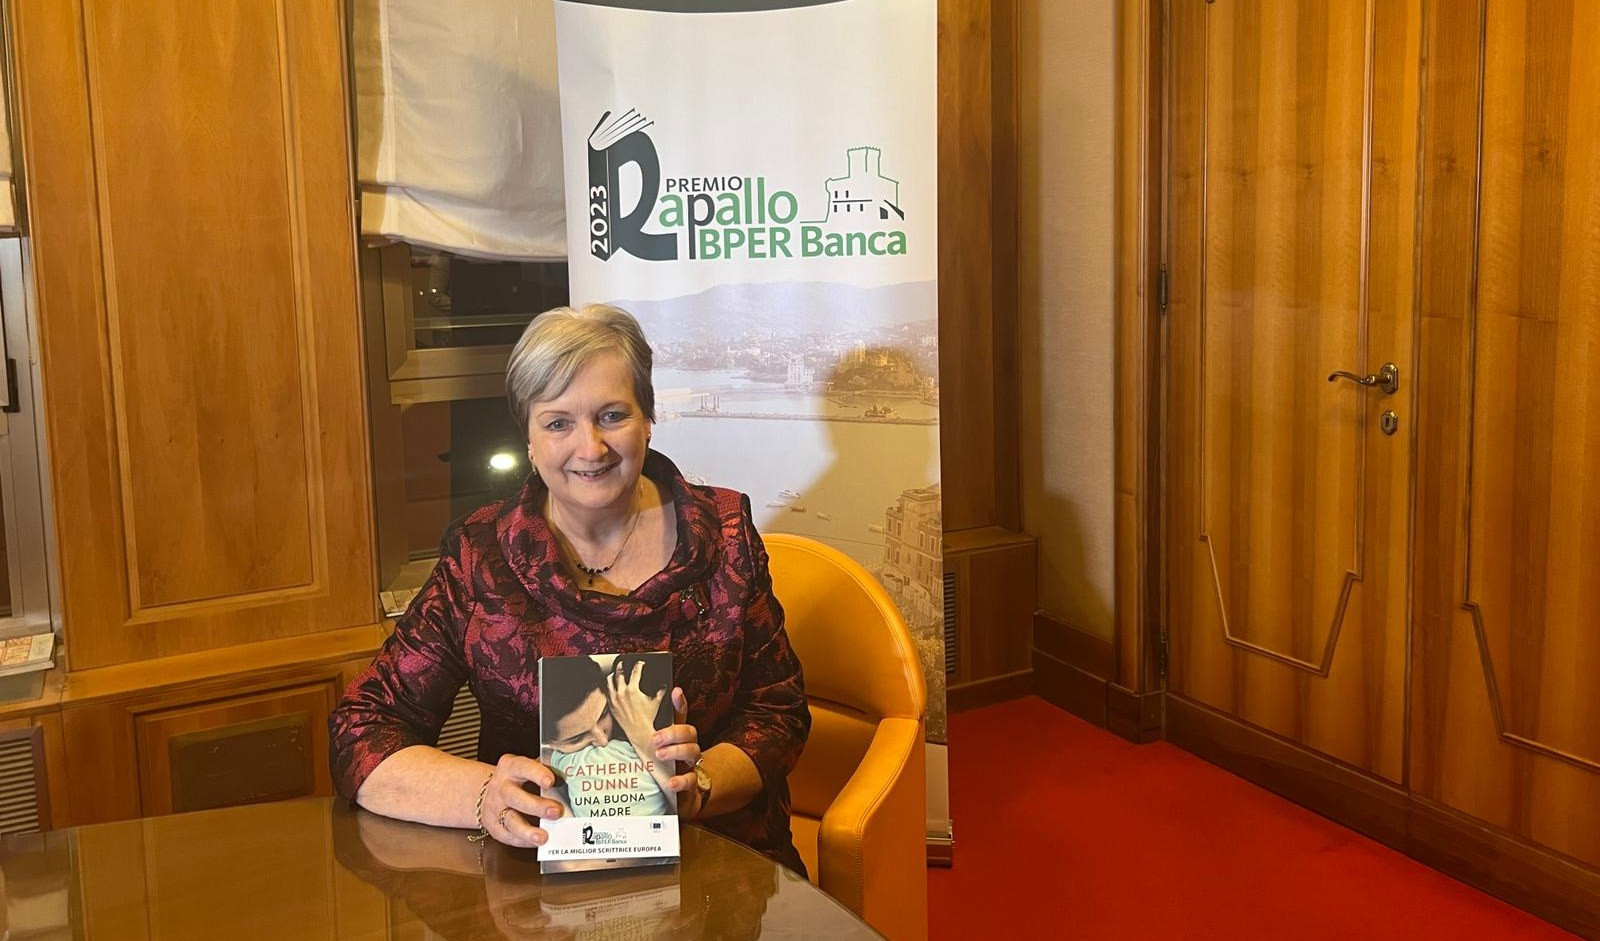 Rapallo Bper Banca premia la miglior scrittrice europea: è Catherine Dunne